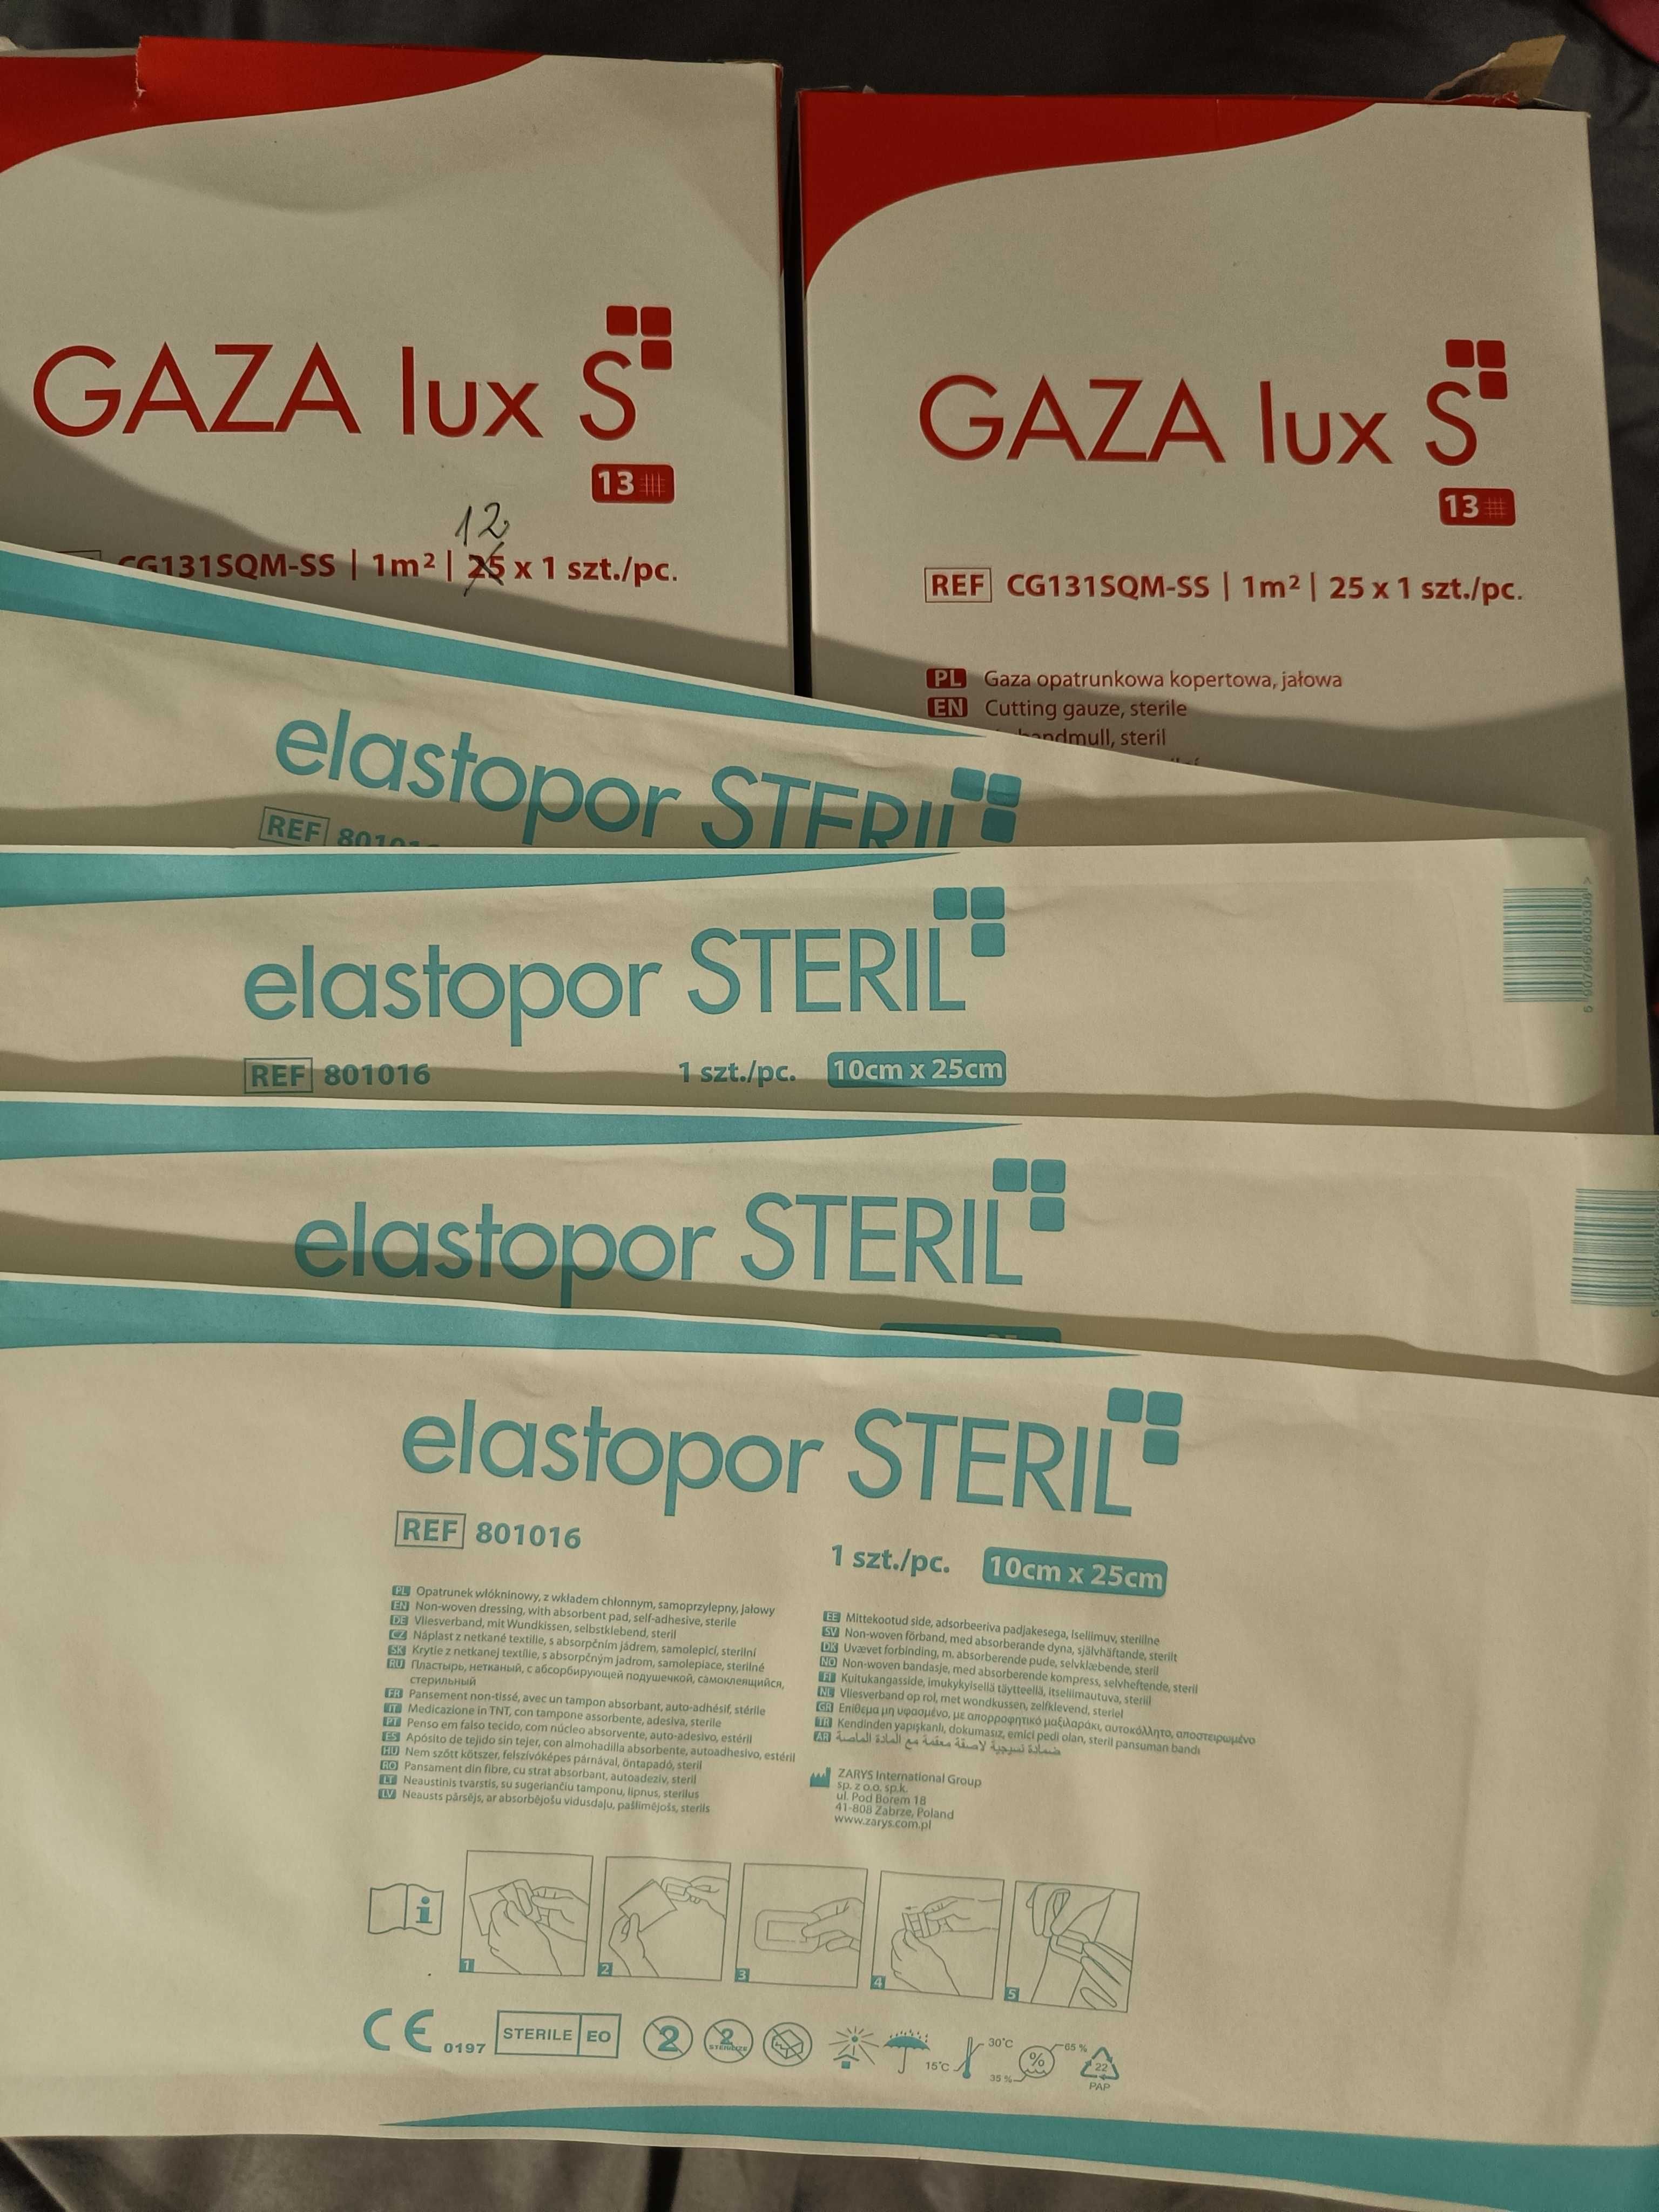 Gaza lux s 1m², elastopor steril